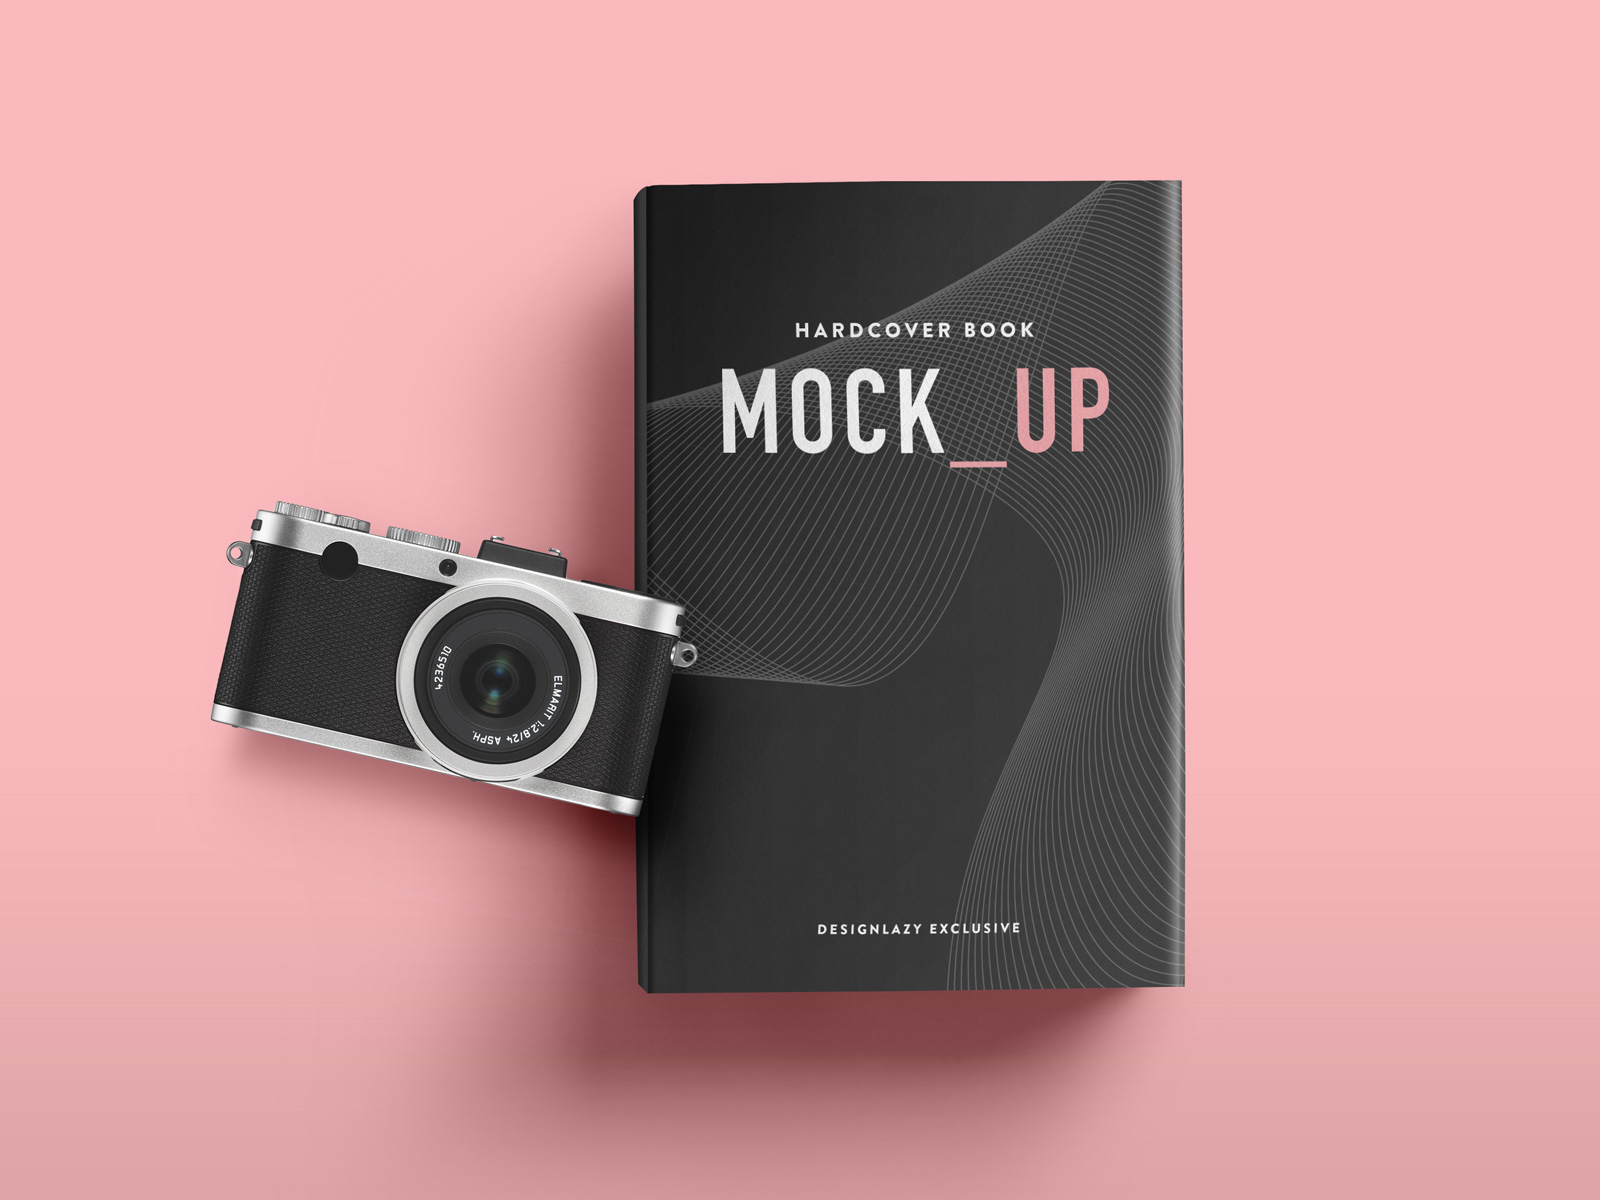 正面黑色精装硬皮书模型设计贴图展示样机PSD模板Hardcover Book Mockup